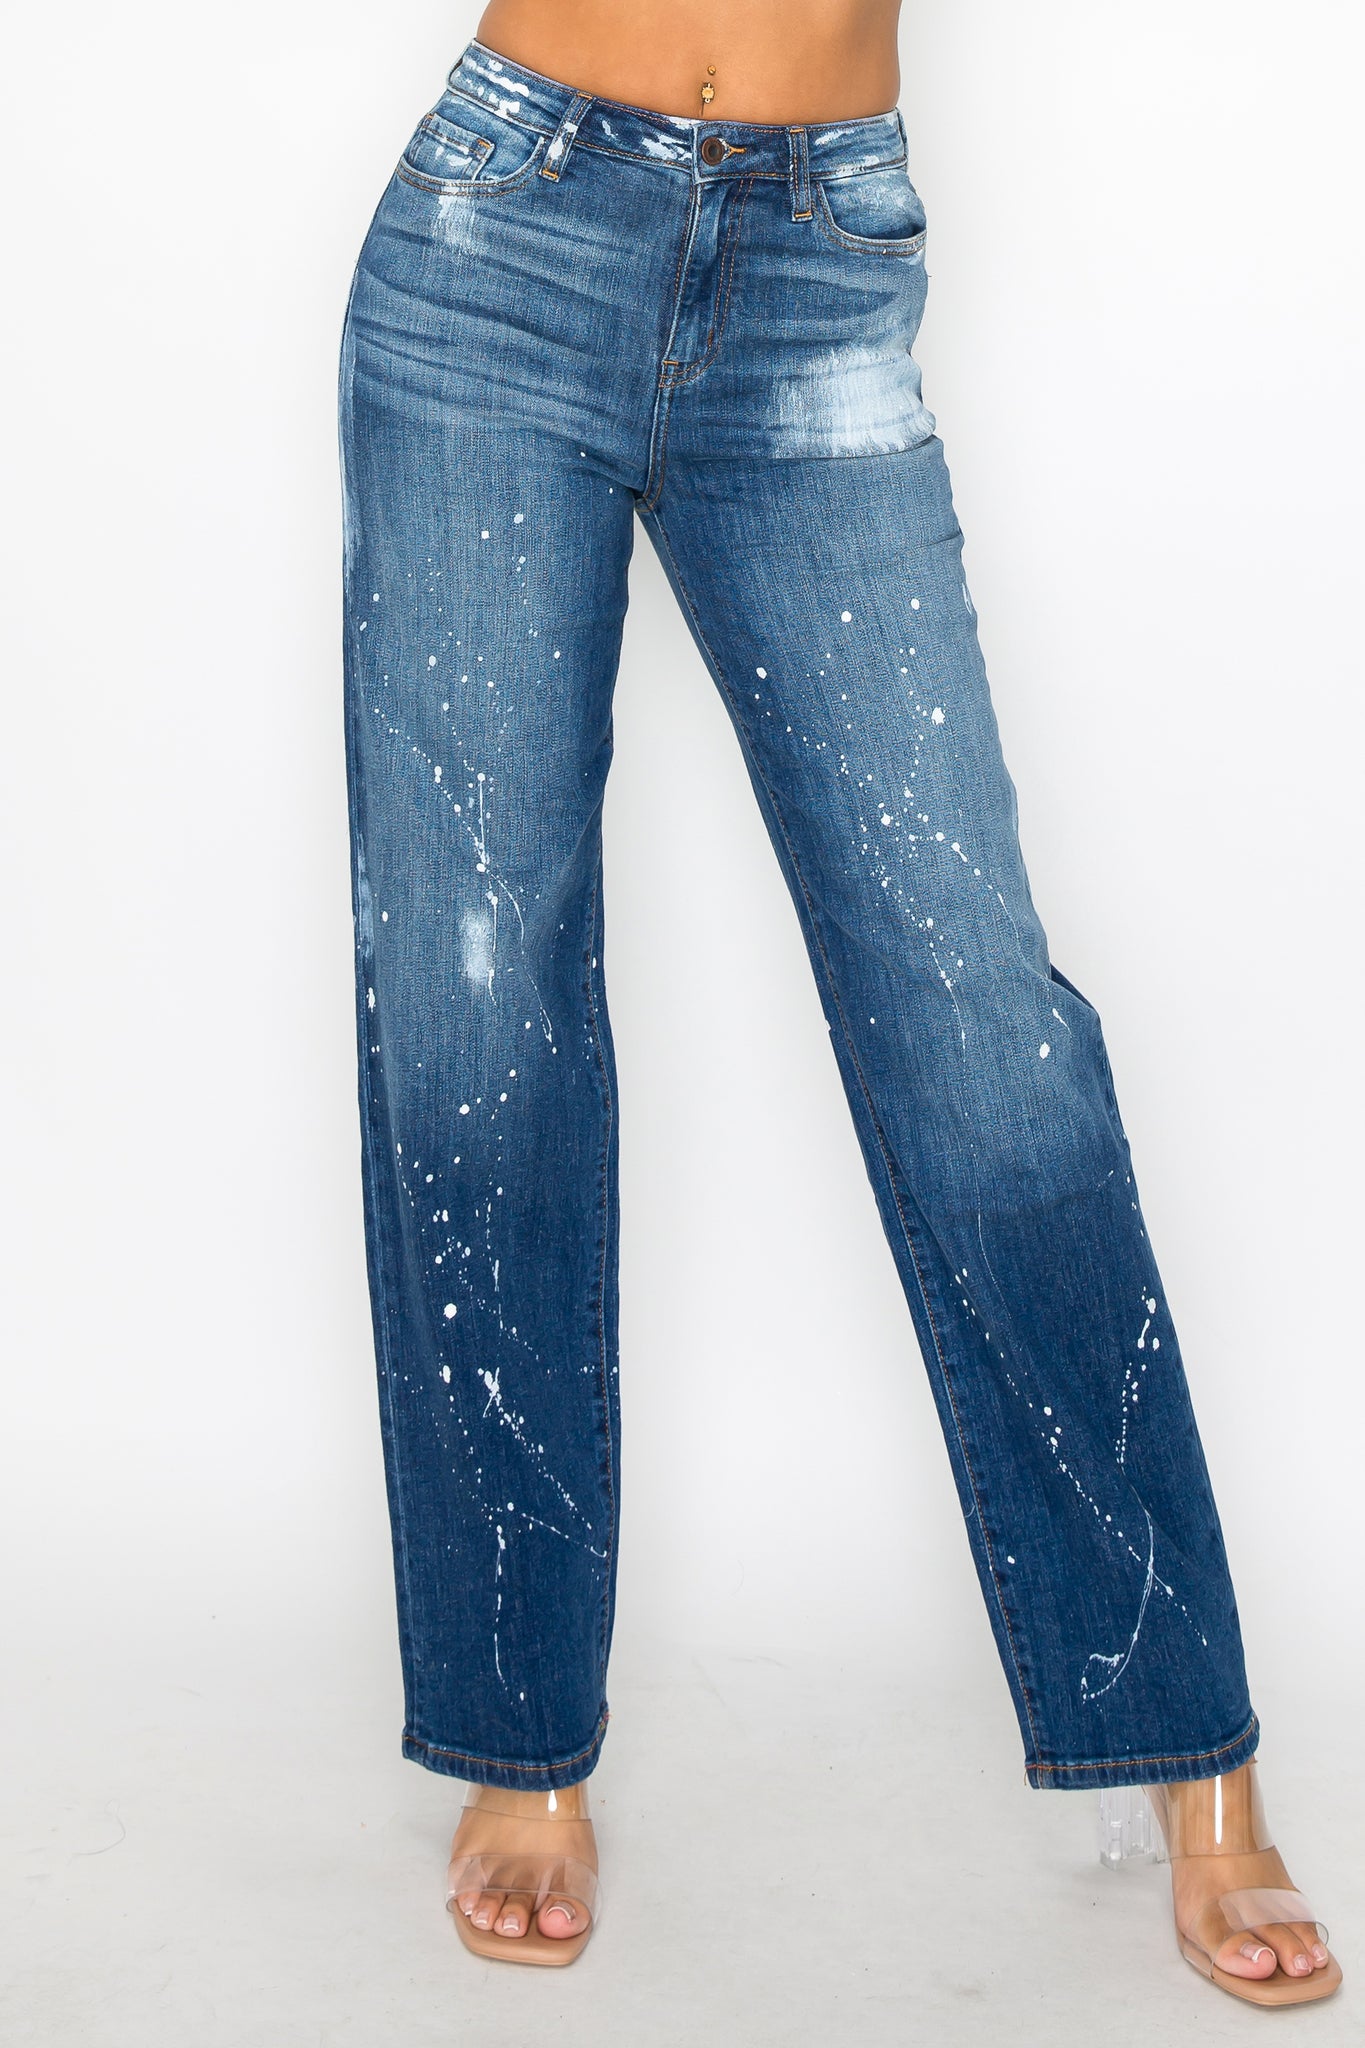 40576 Women's Mid Rise Loose Fit Jeans w/ White paint splash